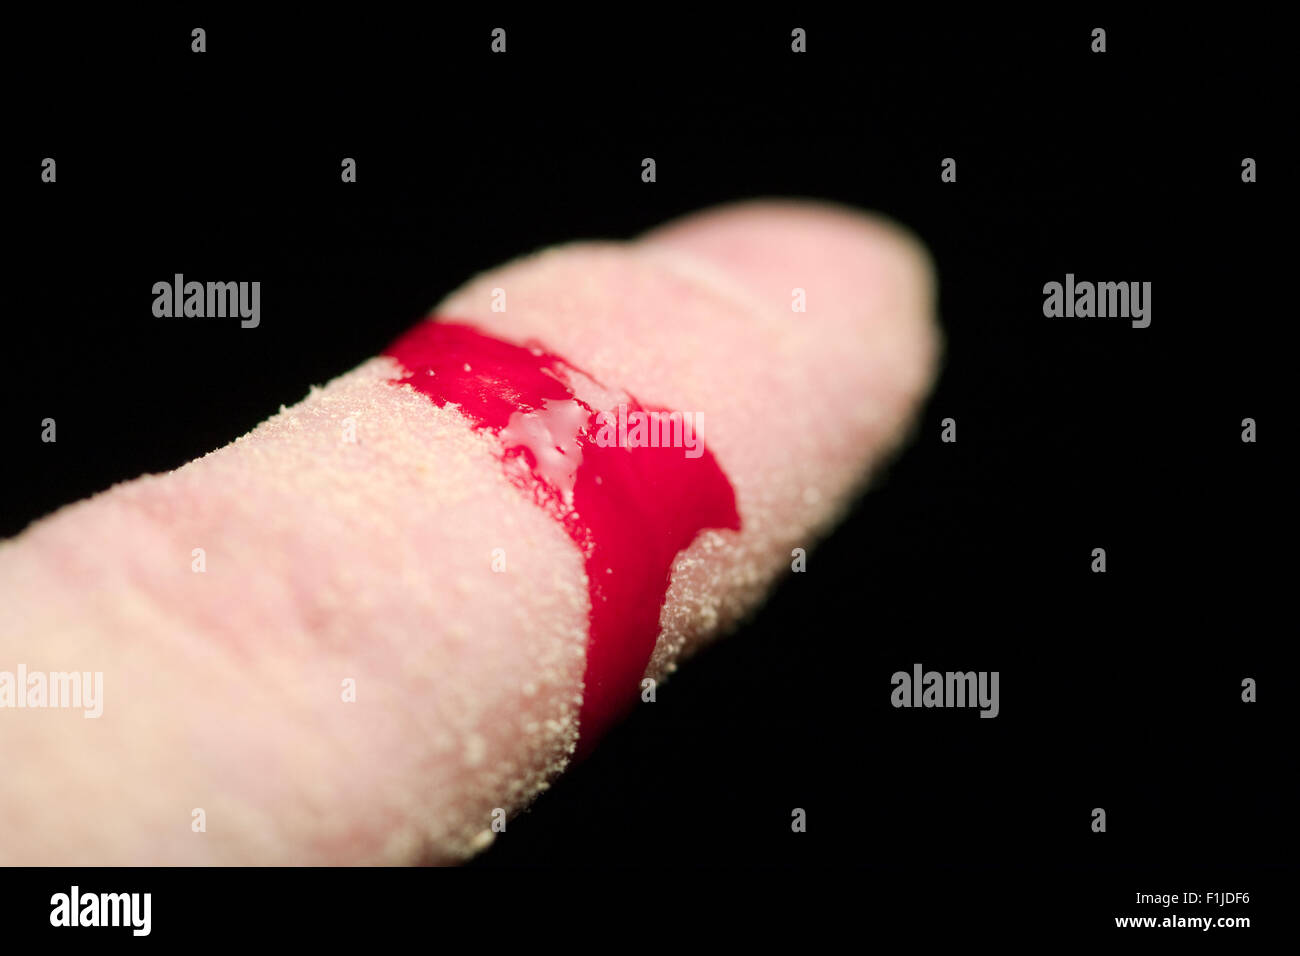 Un hombre del dedo índice cubierto con aserrín, mientras que la sangre de una herida es el streaming sobre fondo negro Foto de stock